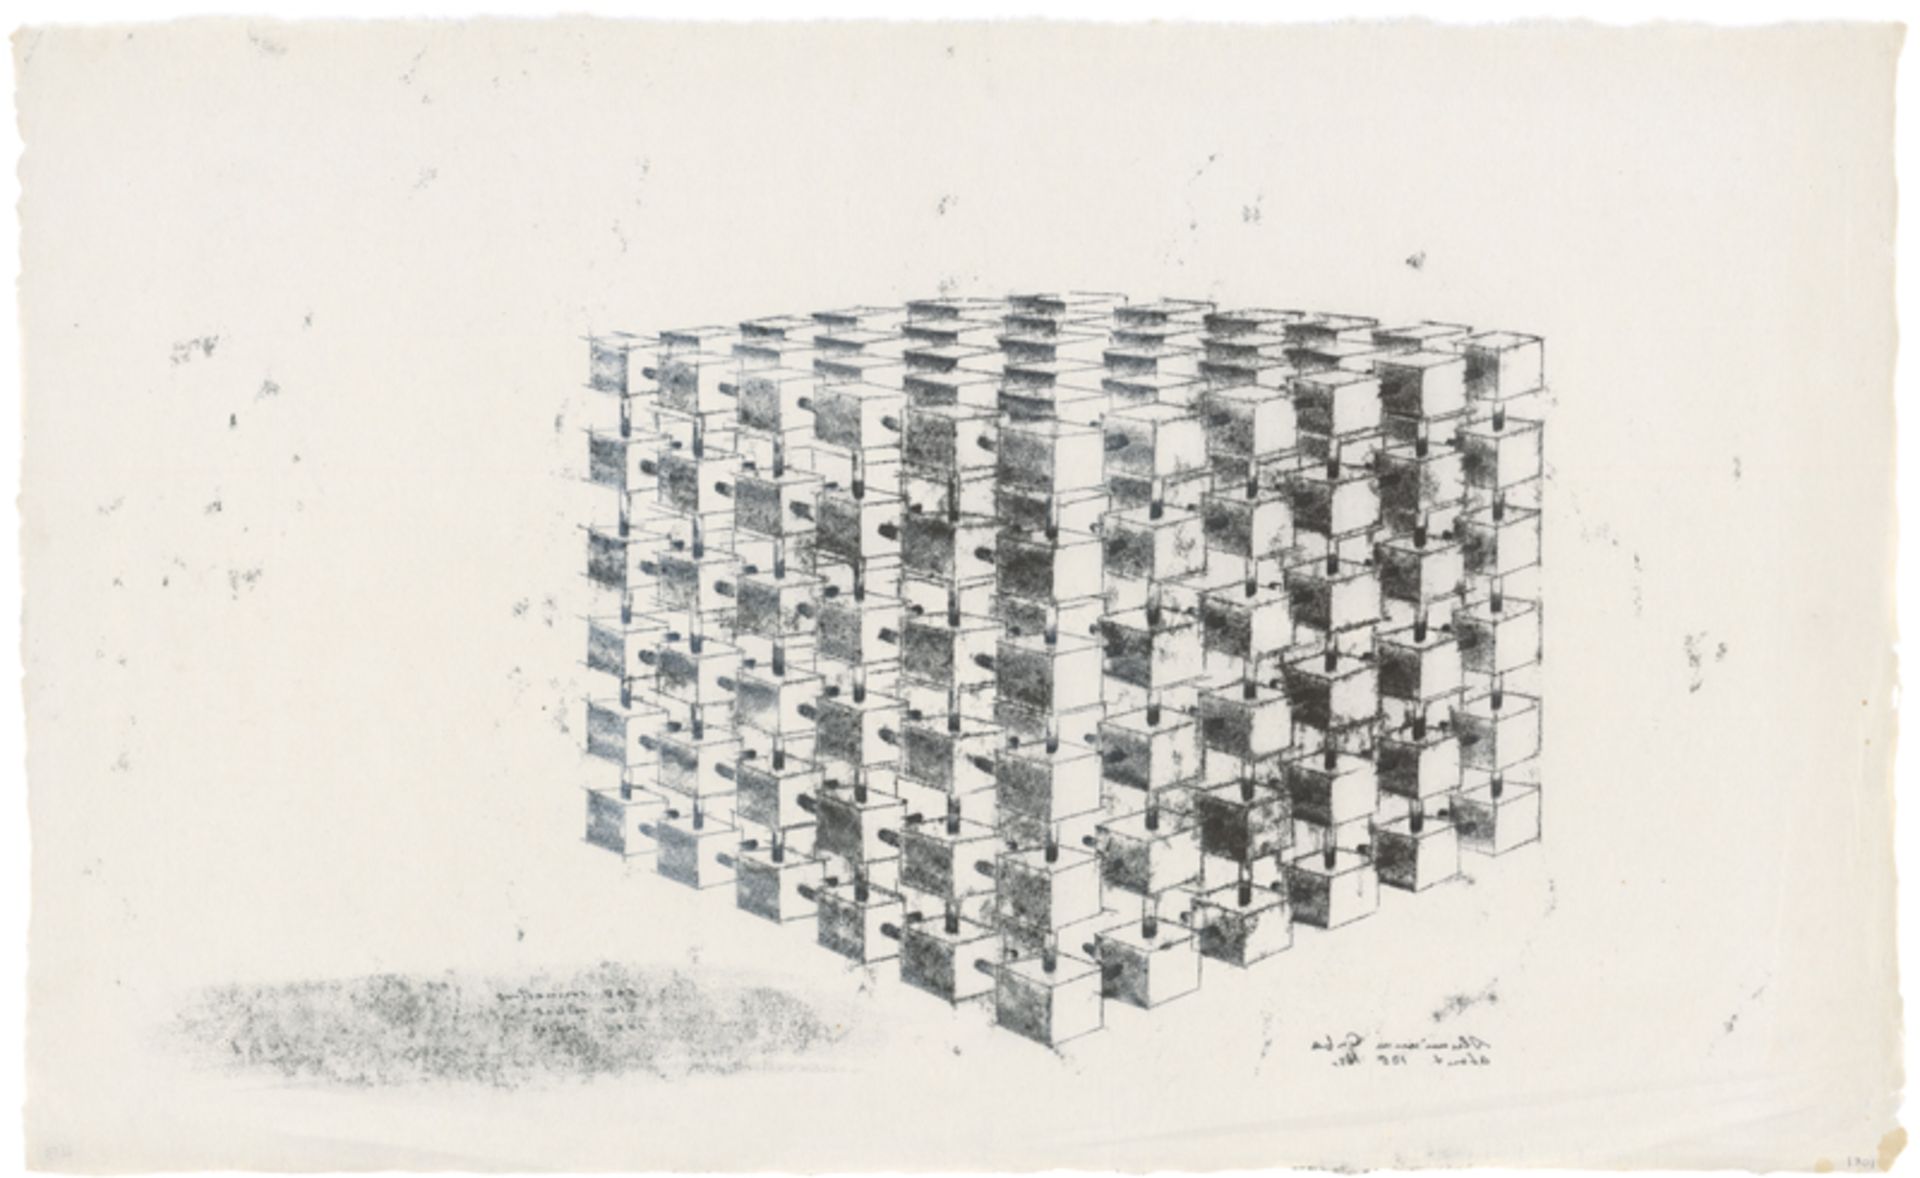 Bertoia, Harry: Aluminium Cubes